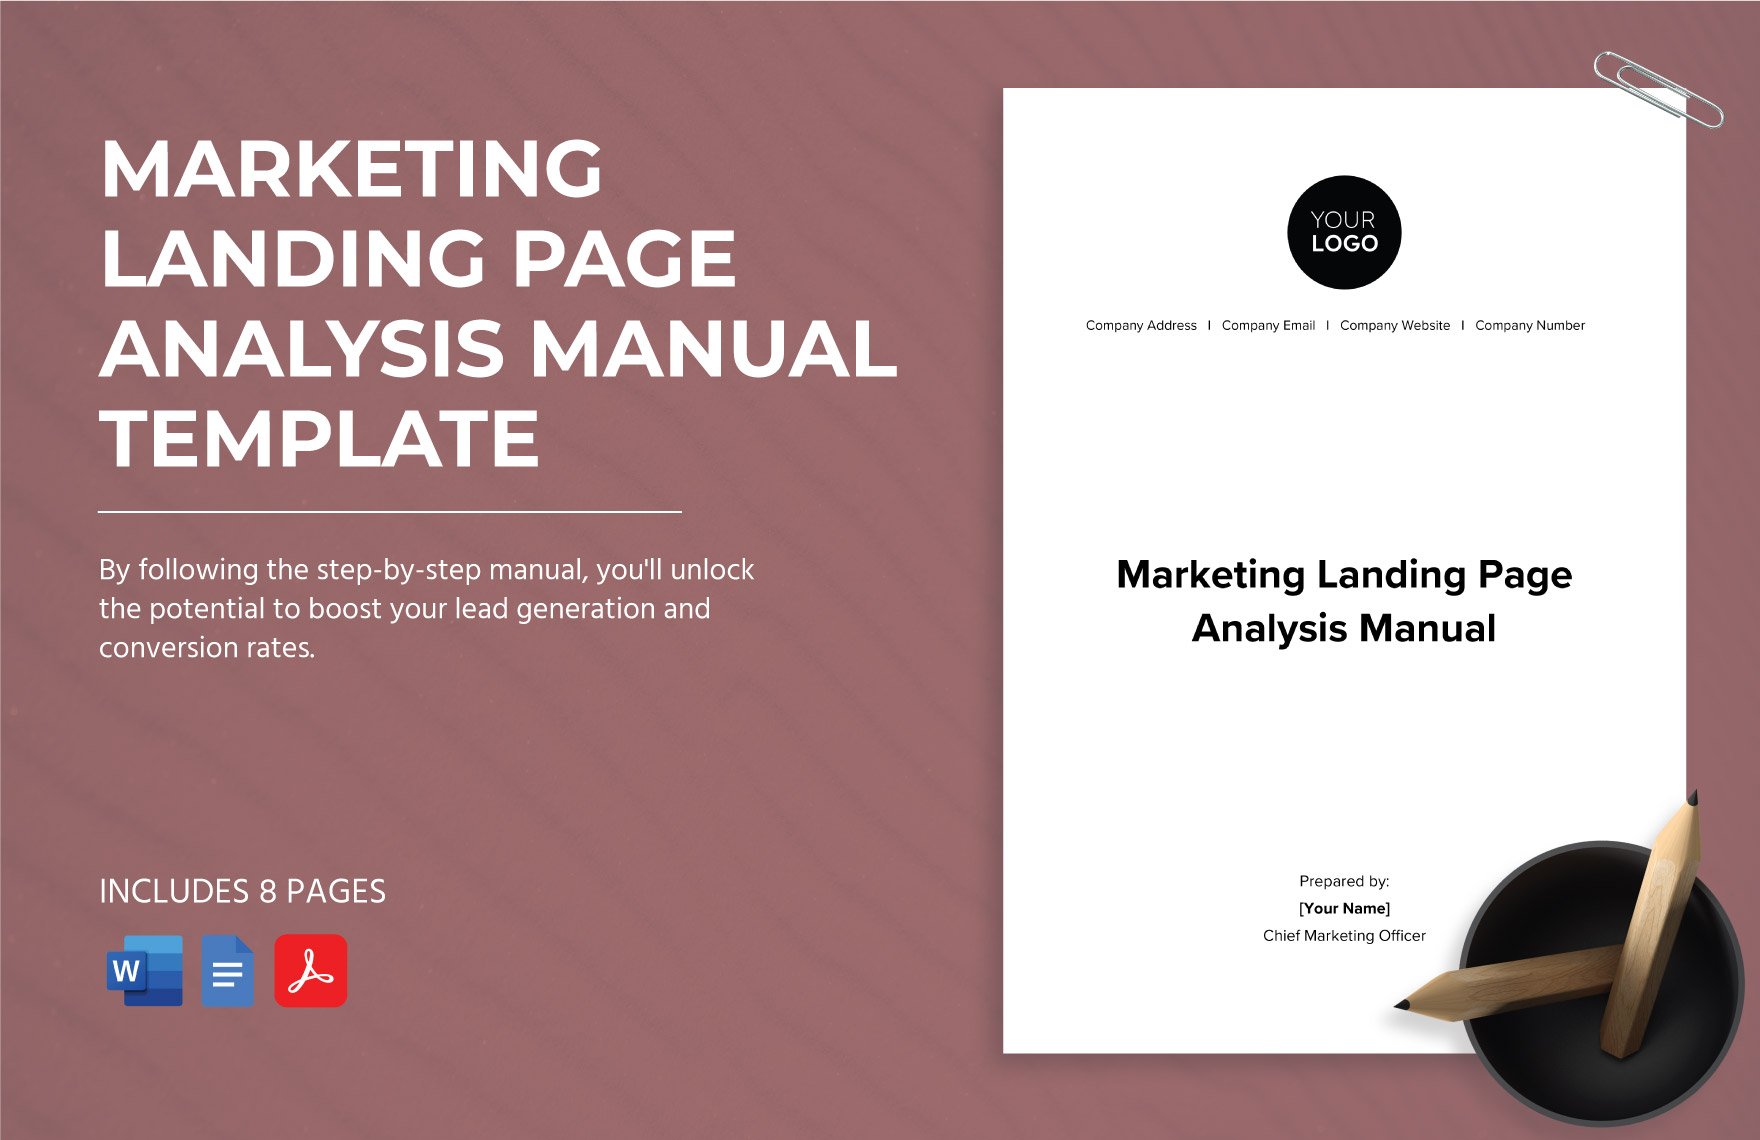 Marketing Landing Page Analysis Manual Template in Word, Google Docs, PDF